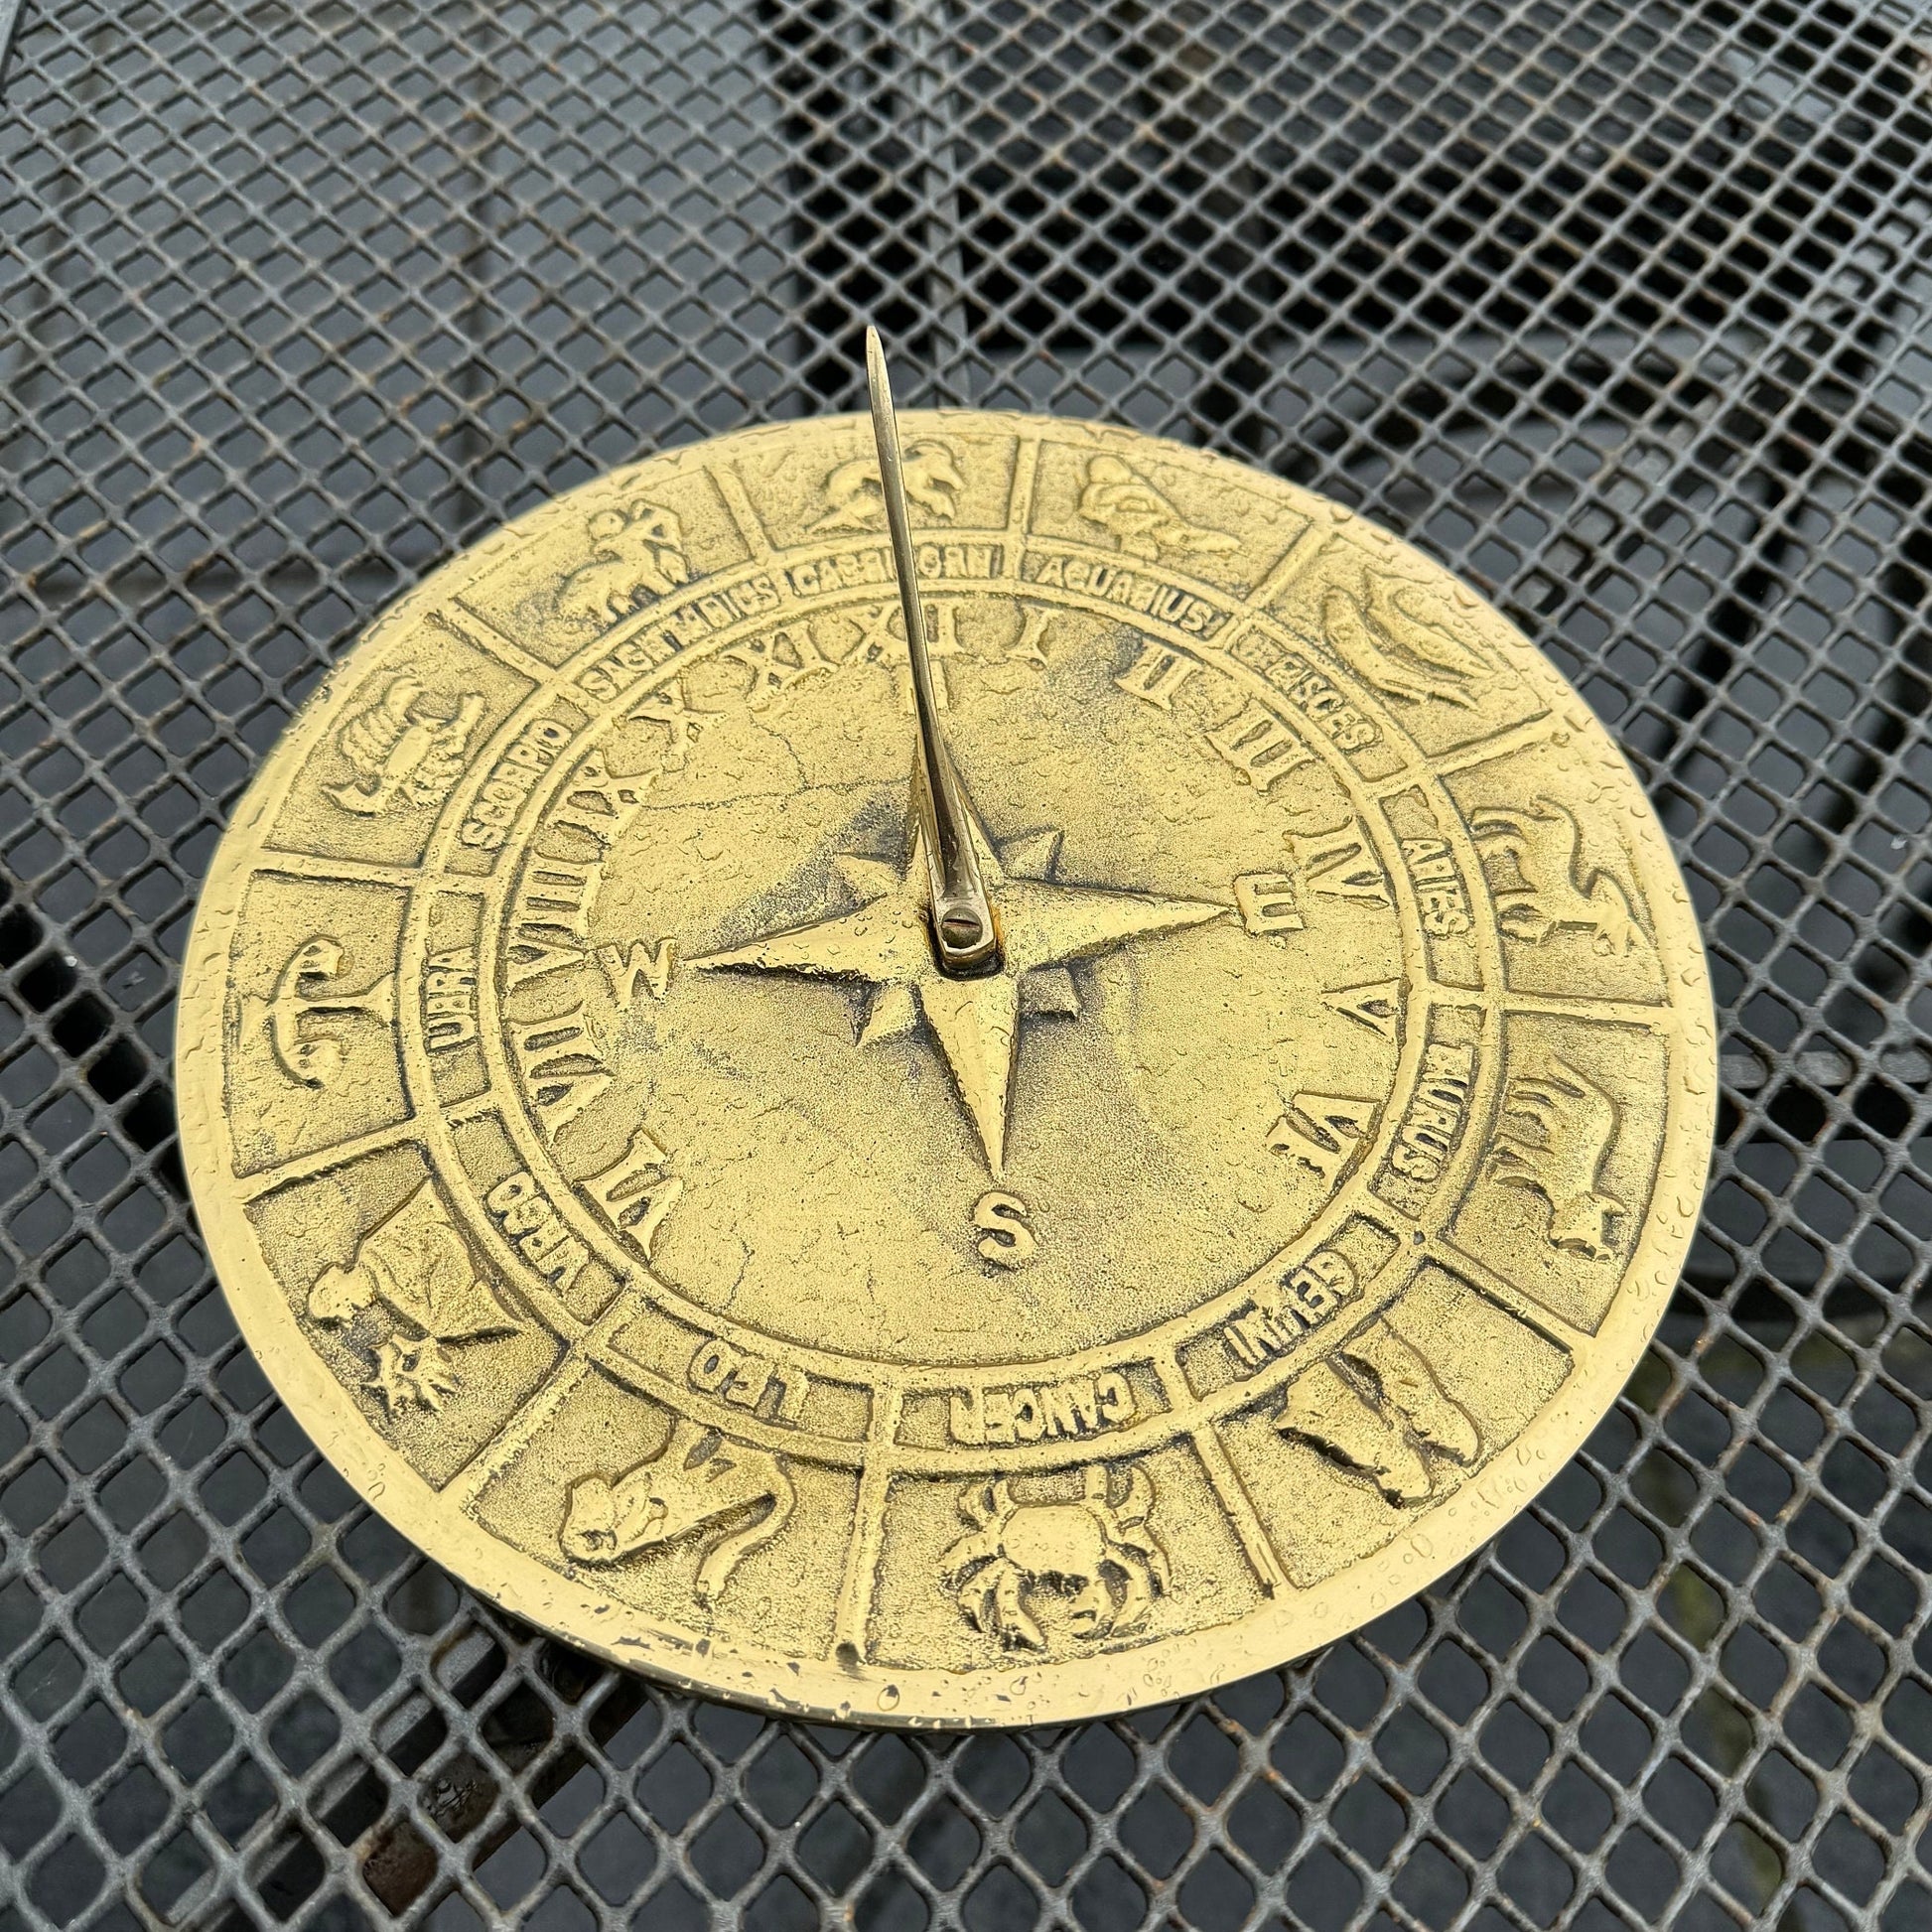 Zodiac Solid Brass and Verdigris Patina Bronze Sculpture Sun Dial Watch Clock